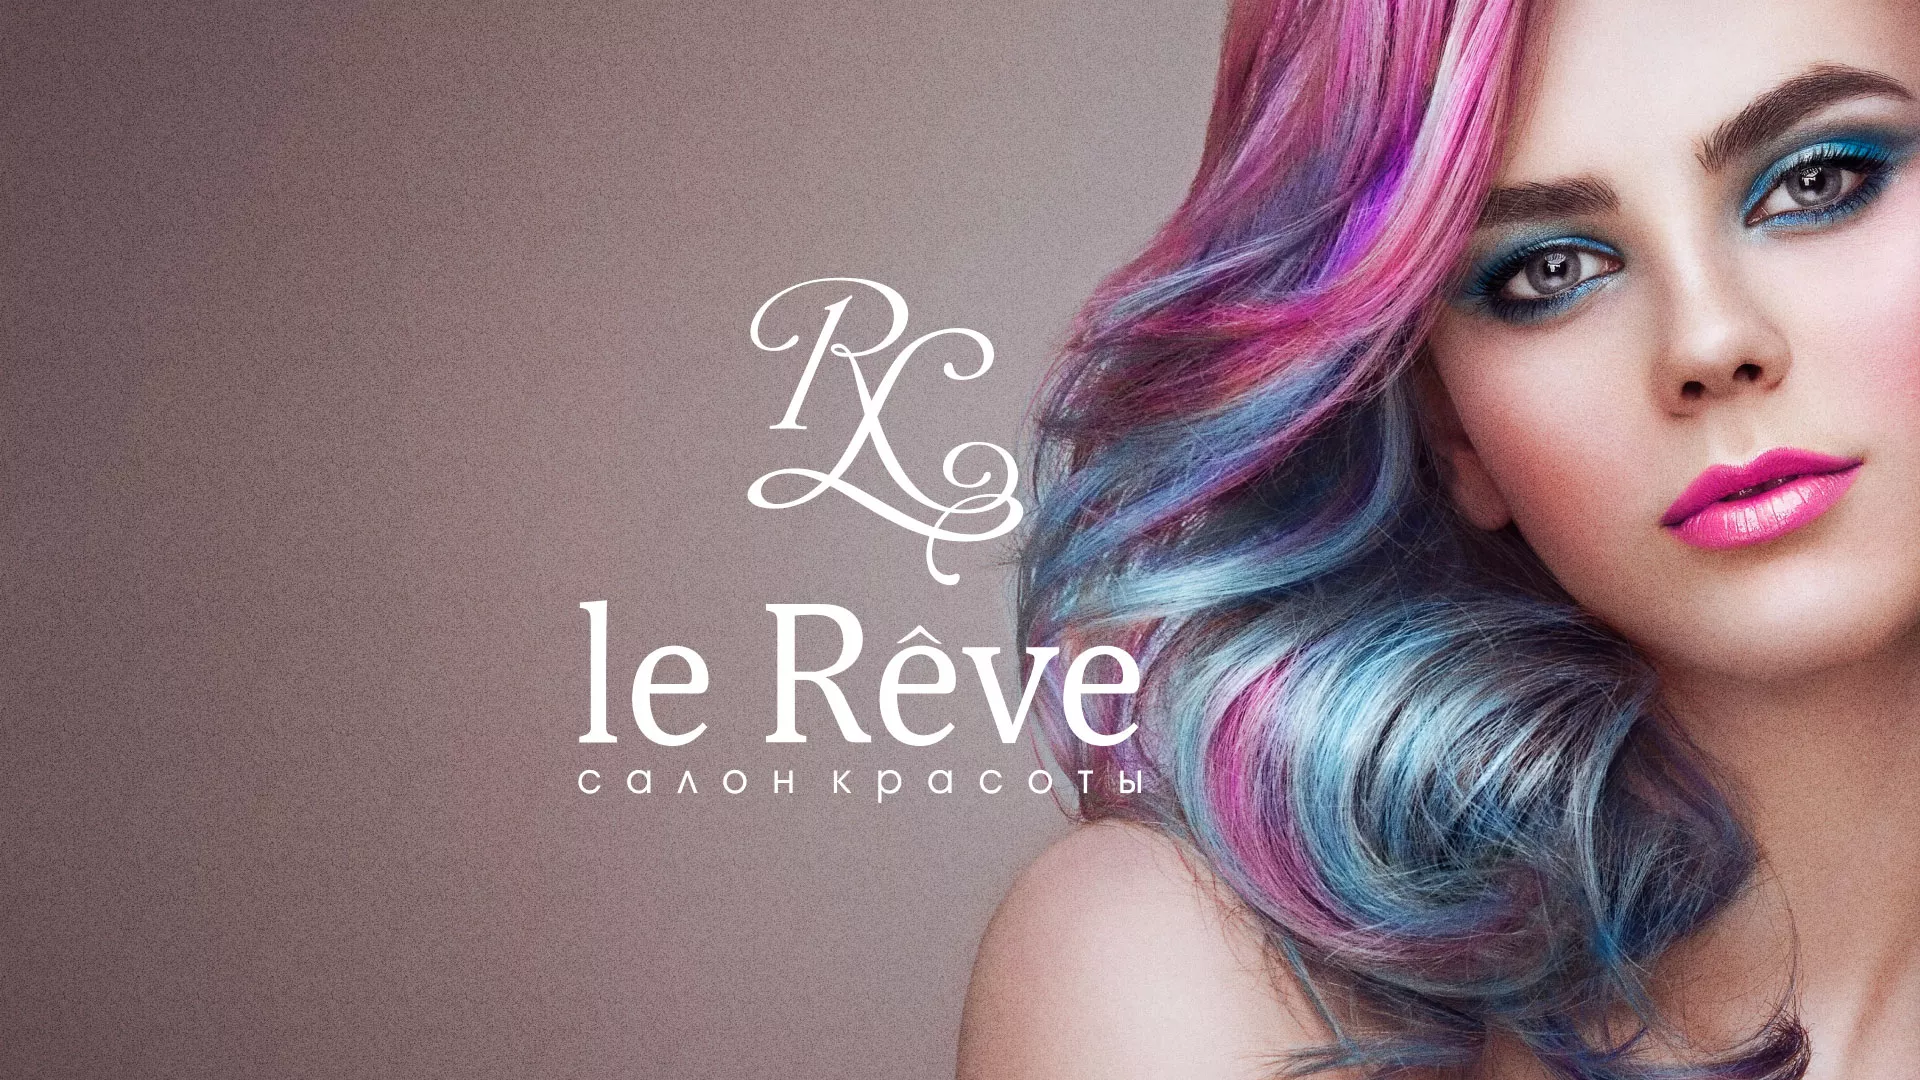 Создание сайта для салона красоты «Le Reve» в Духовщине